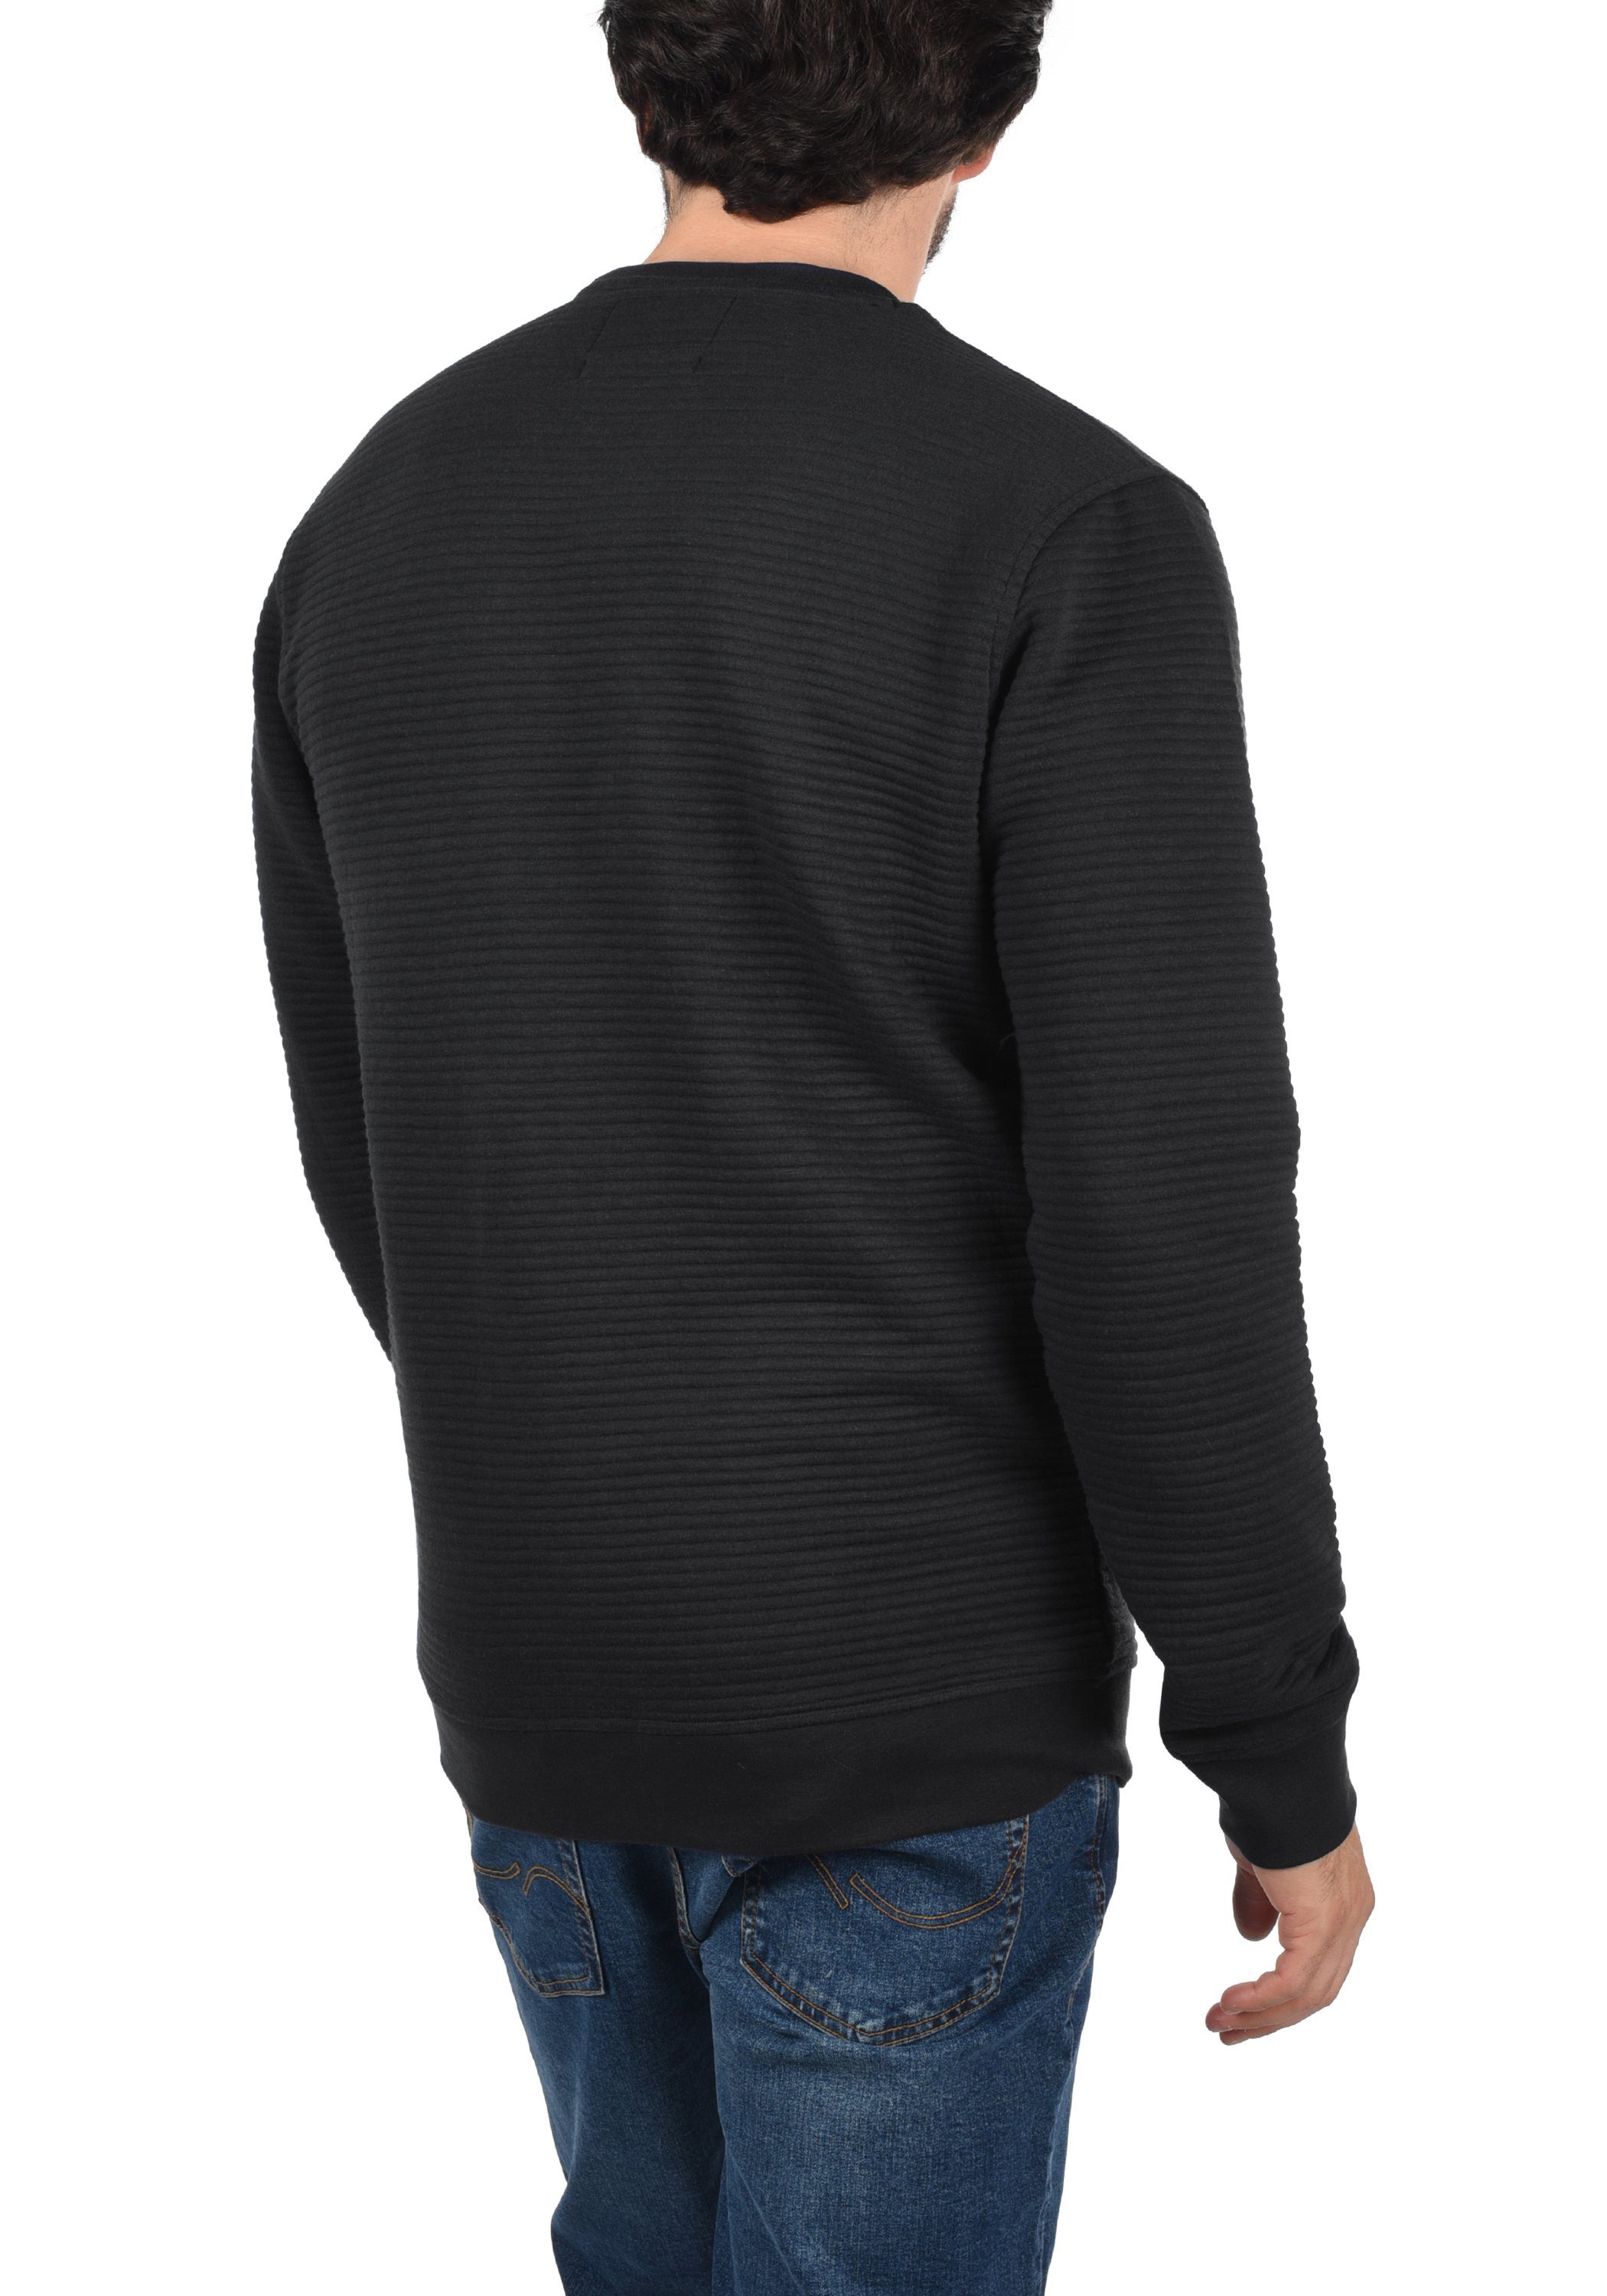 Black (999) Sweatshirt Sweatpulli IDBronn Indicode